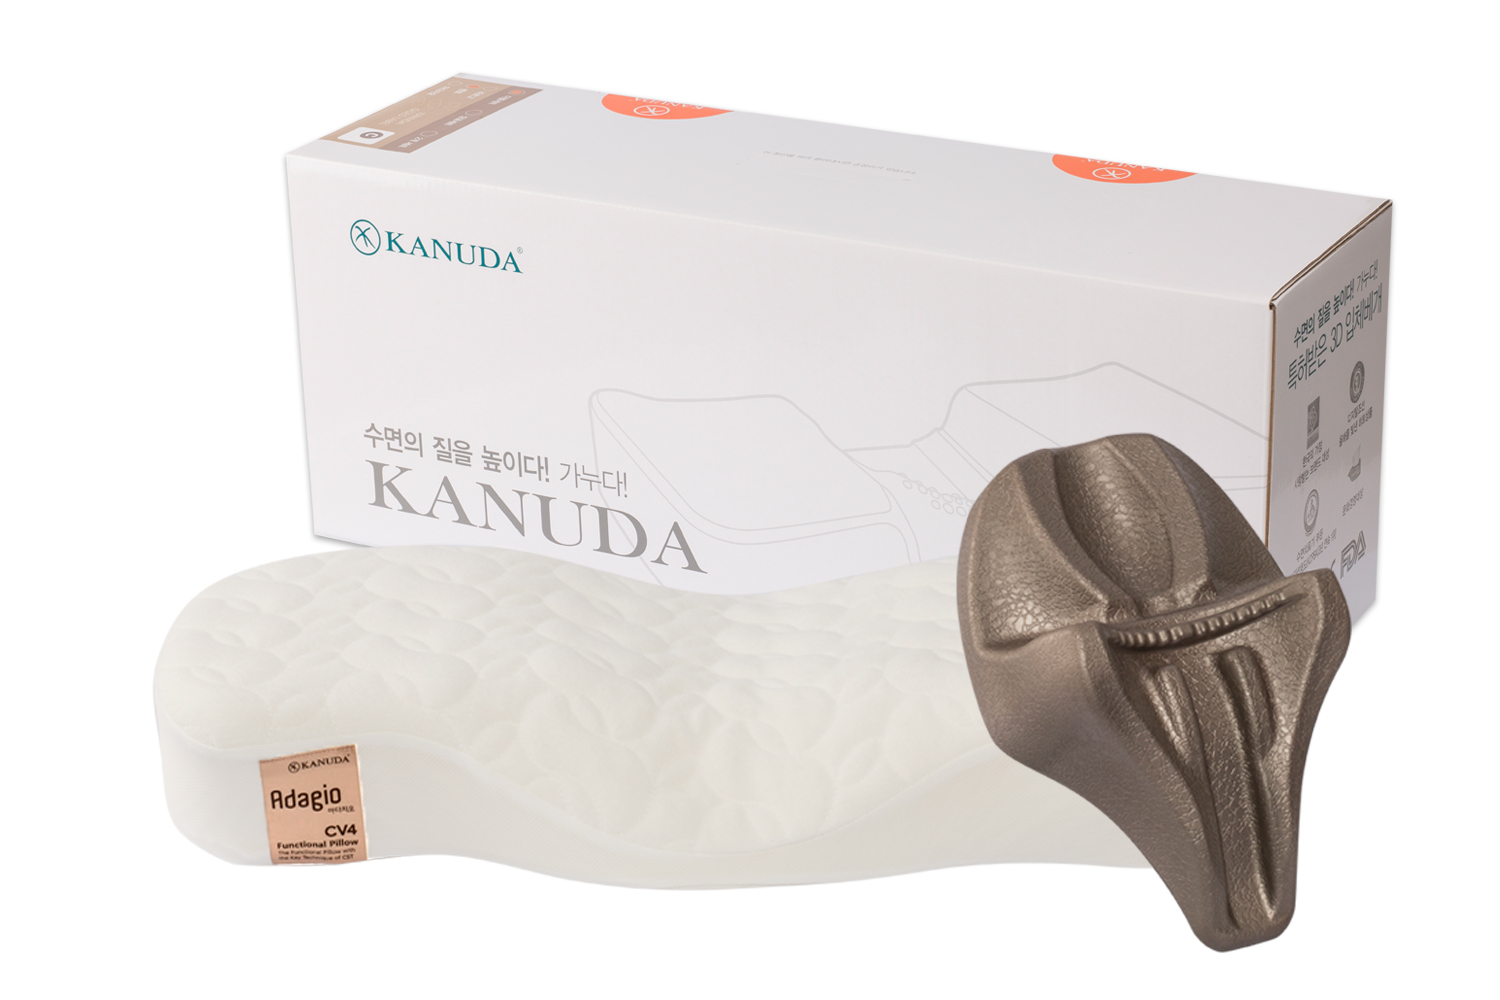 Ортопедическая подушка KANUDA Gold Label Adagio, набор подушка + нэп, Корея, белый